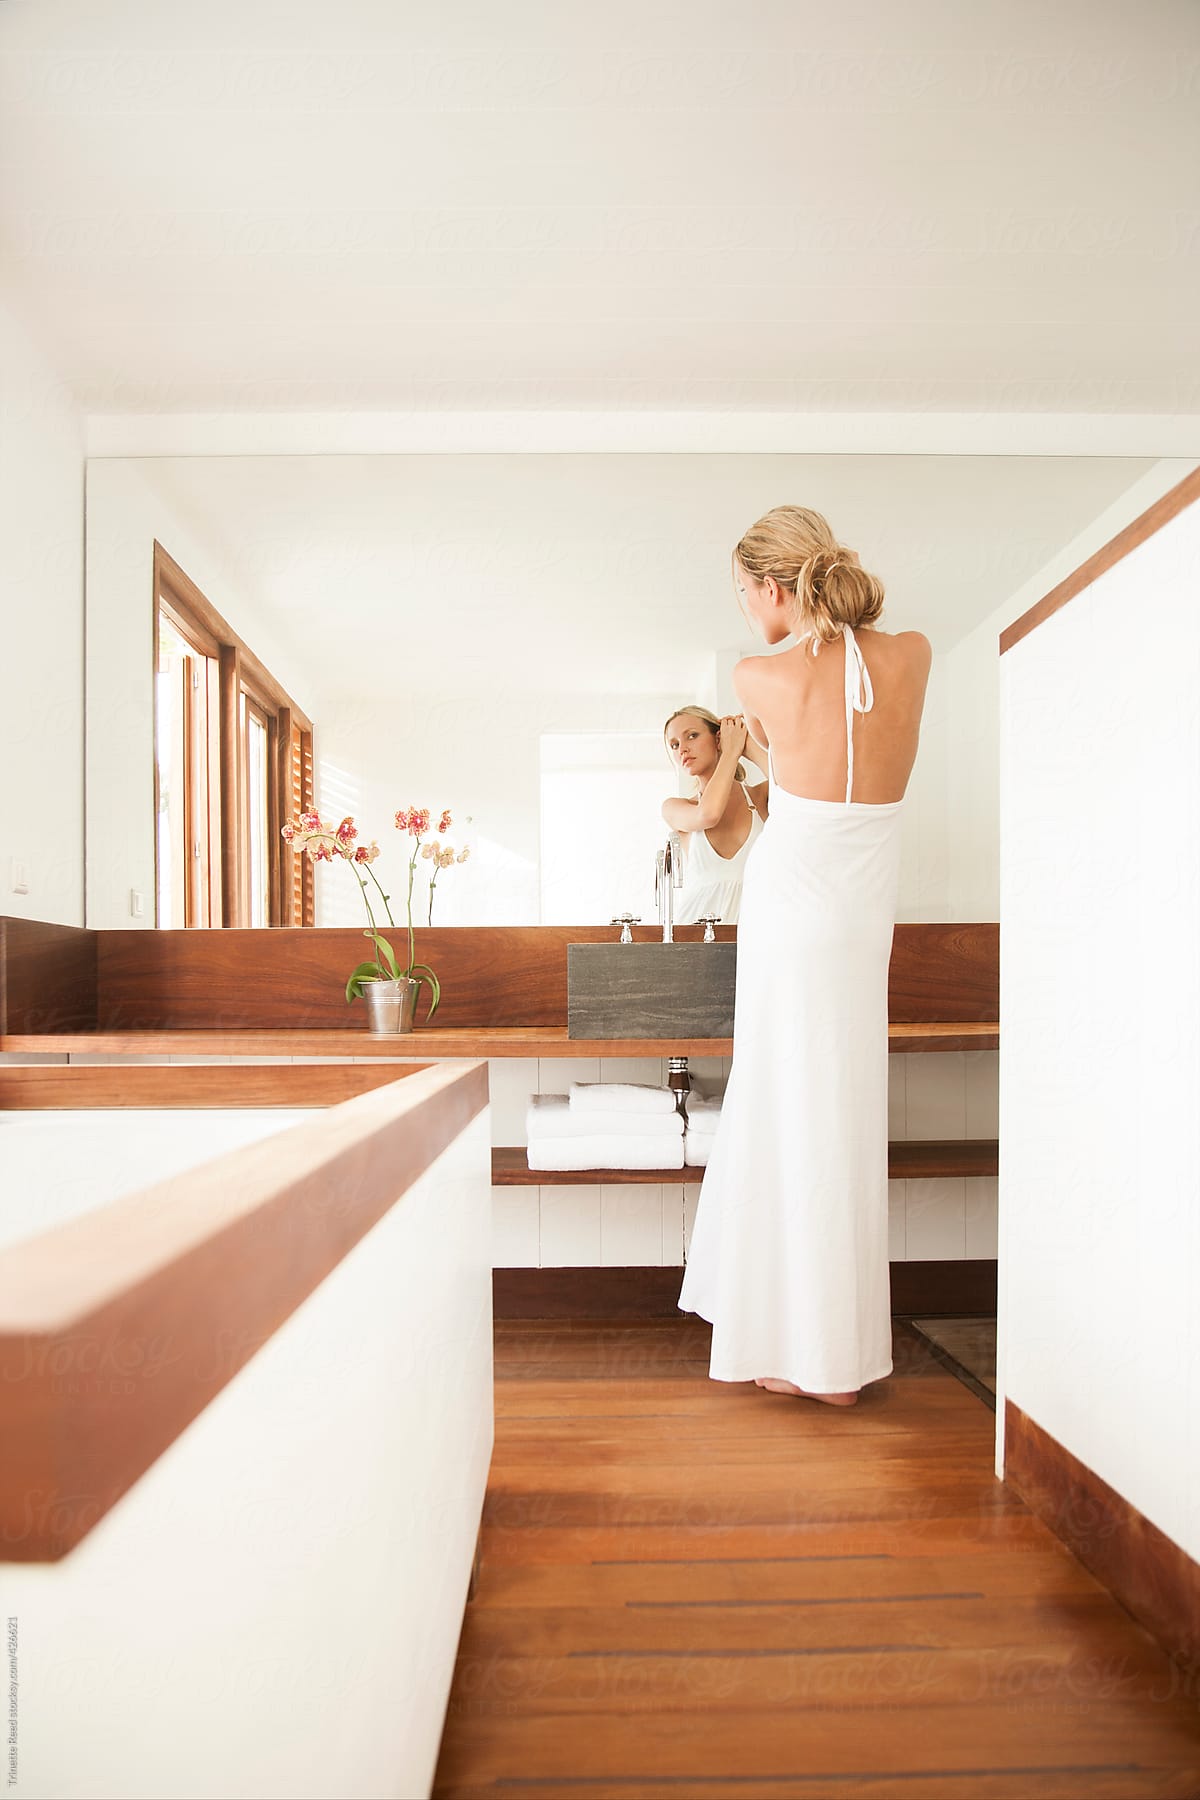 Woman getting ready in modern luxury bathroom